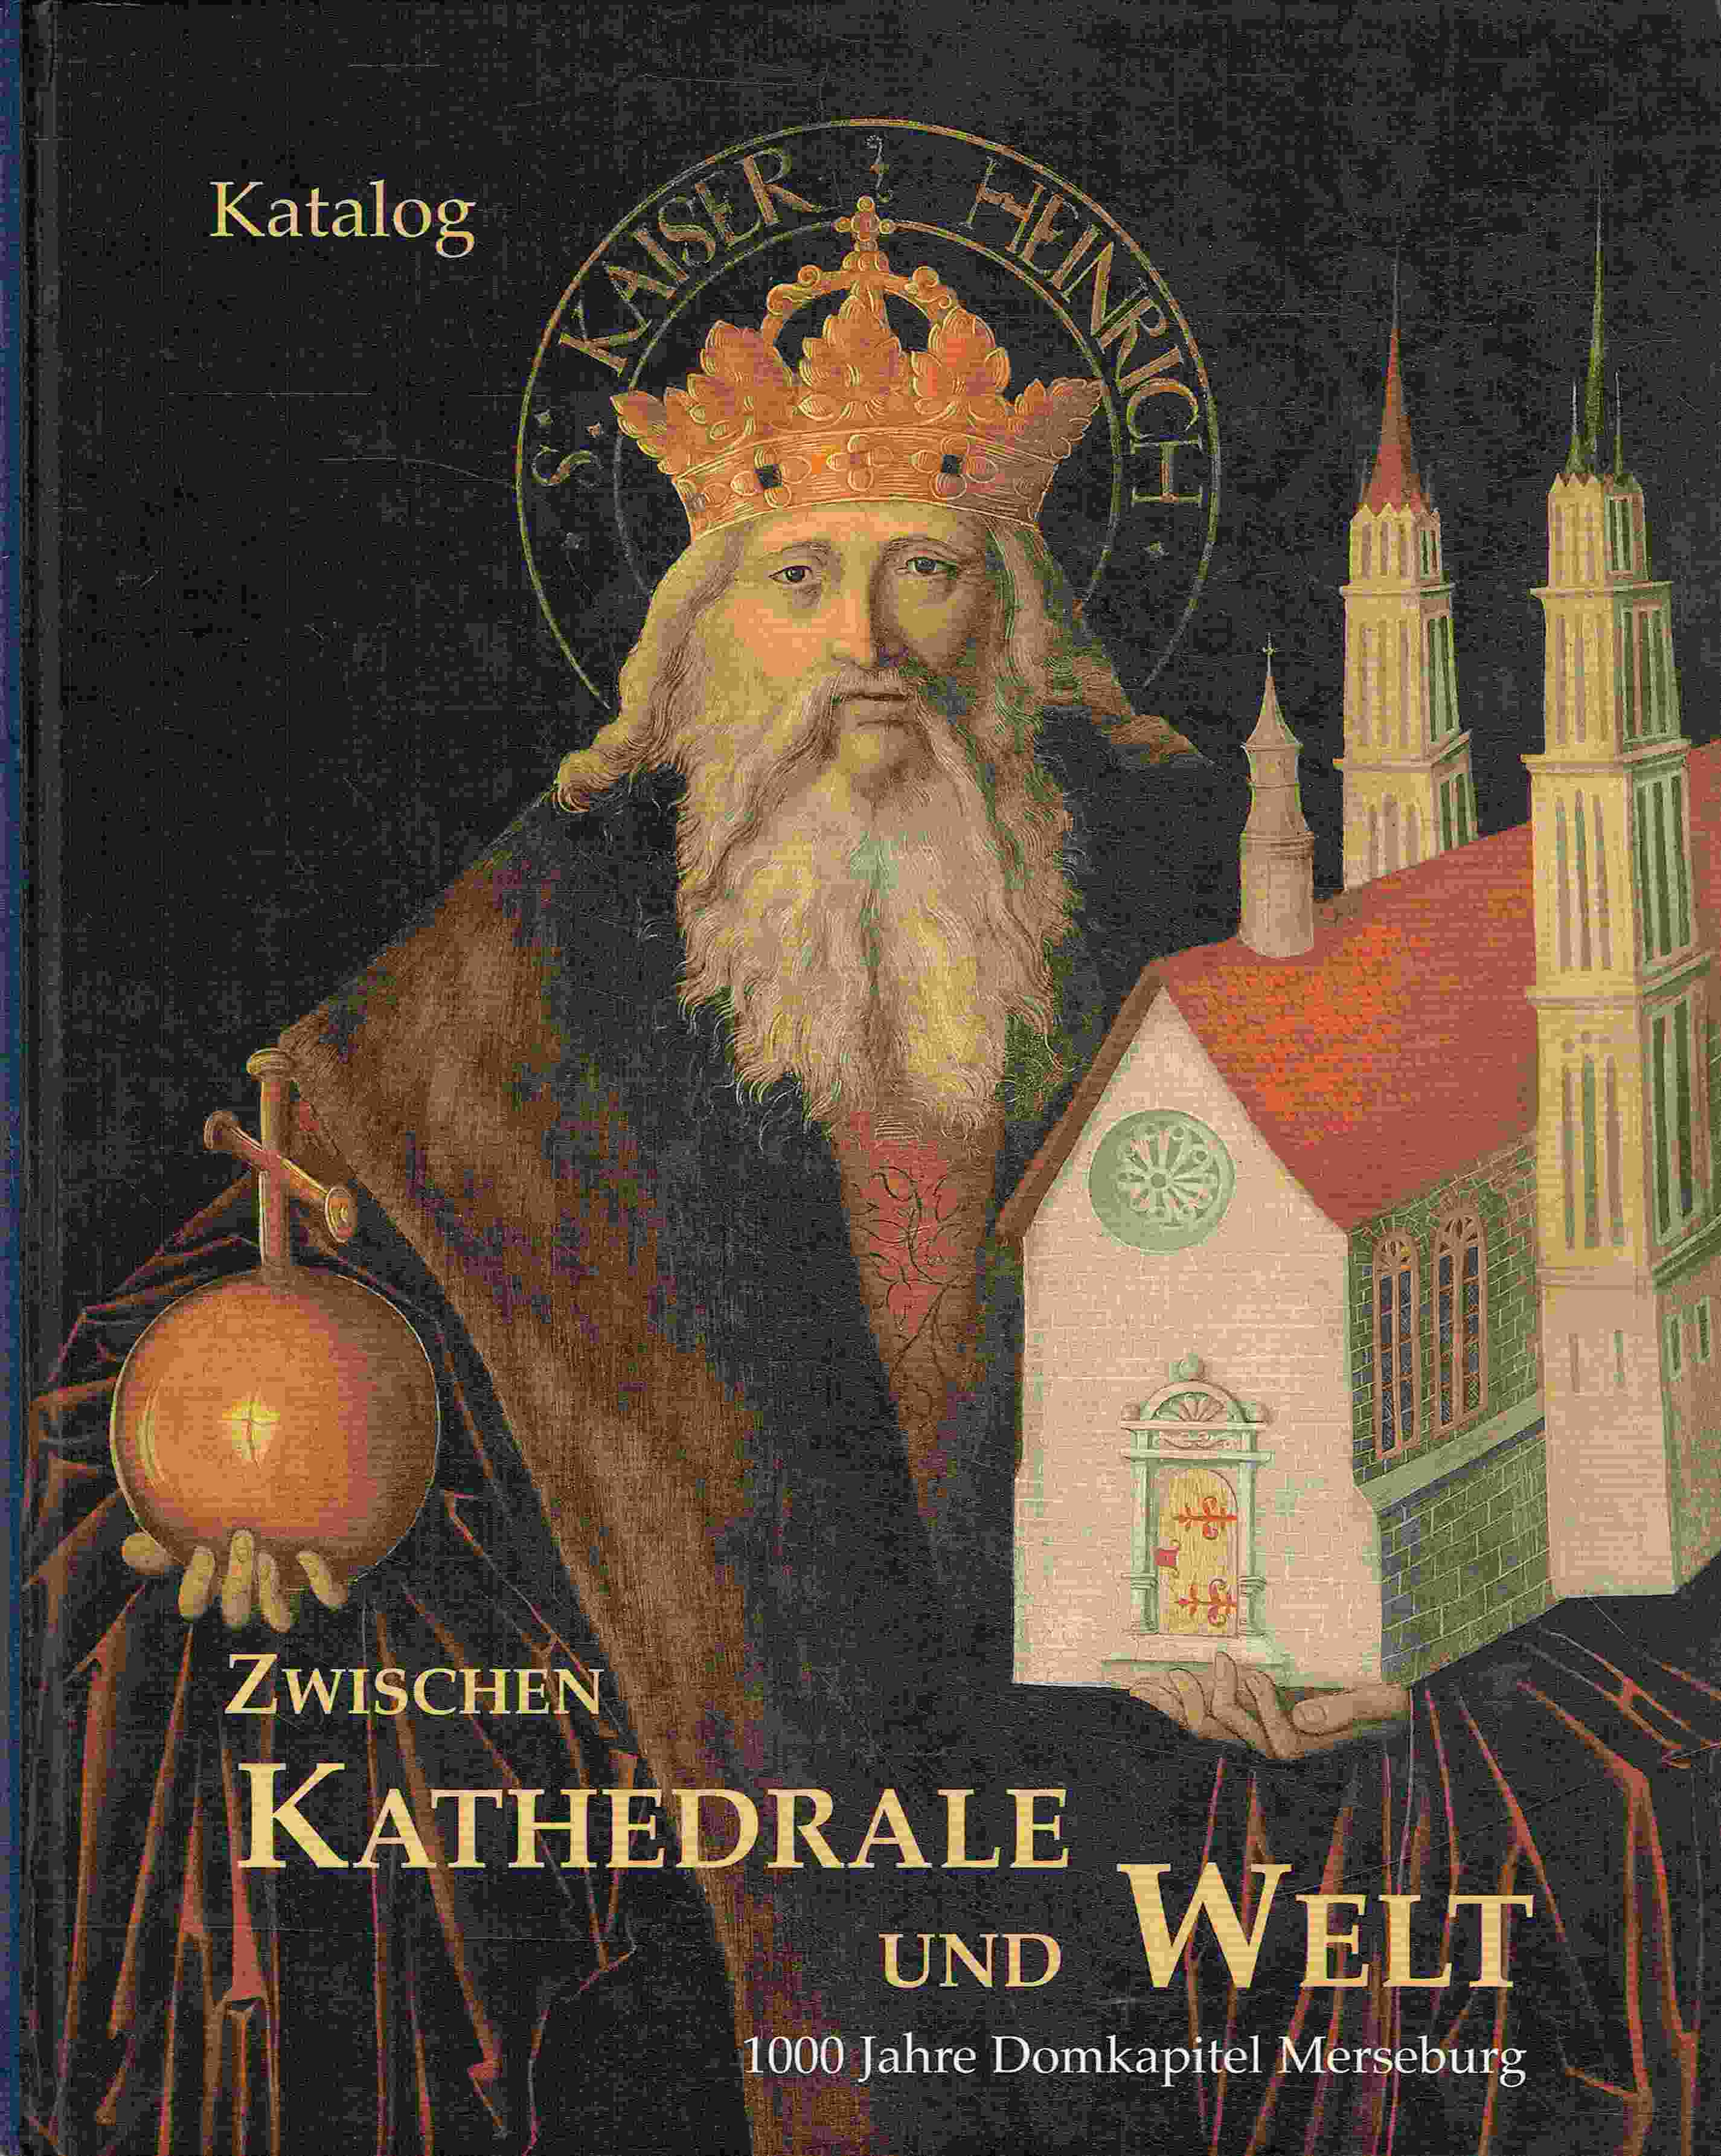 Zwischen Kathedrale und Welt. 1000 Jahre Domkapitel Merseburg. Band 1. Katalog. - Heise, Karin; Kunde, Holger; Wittmann, Helge (Hrsg.)